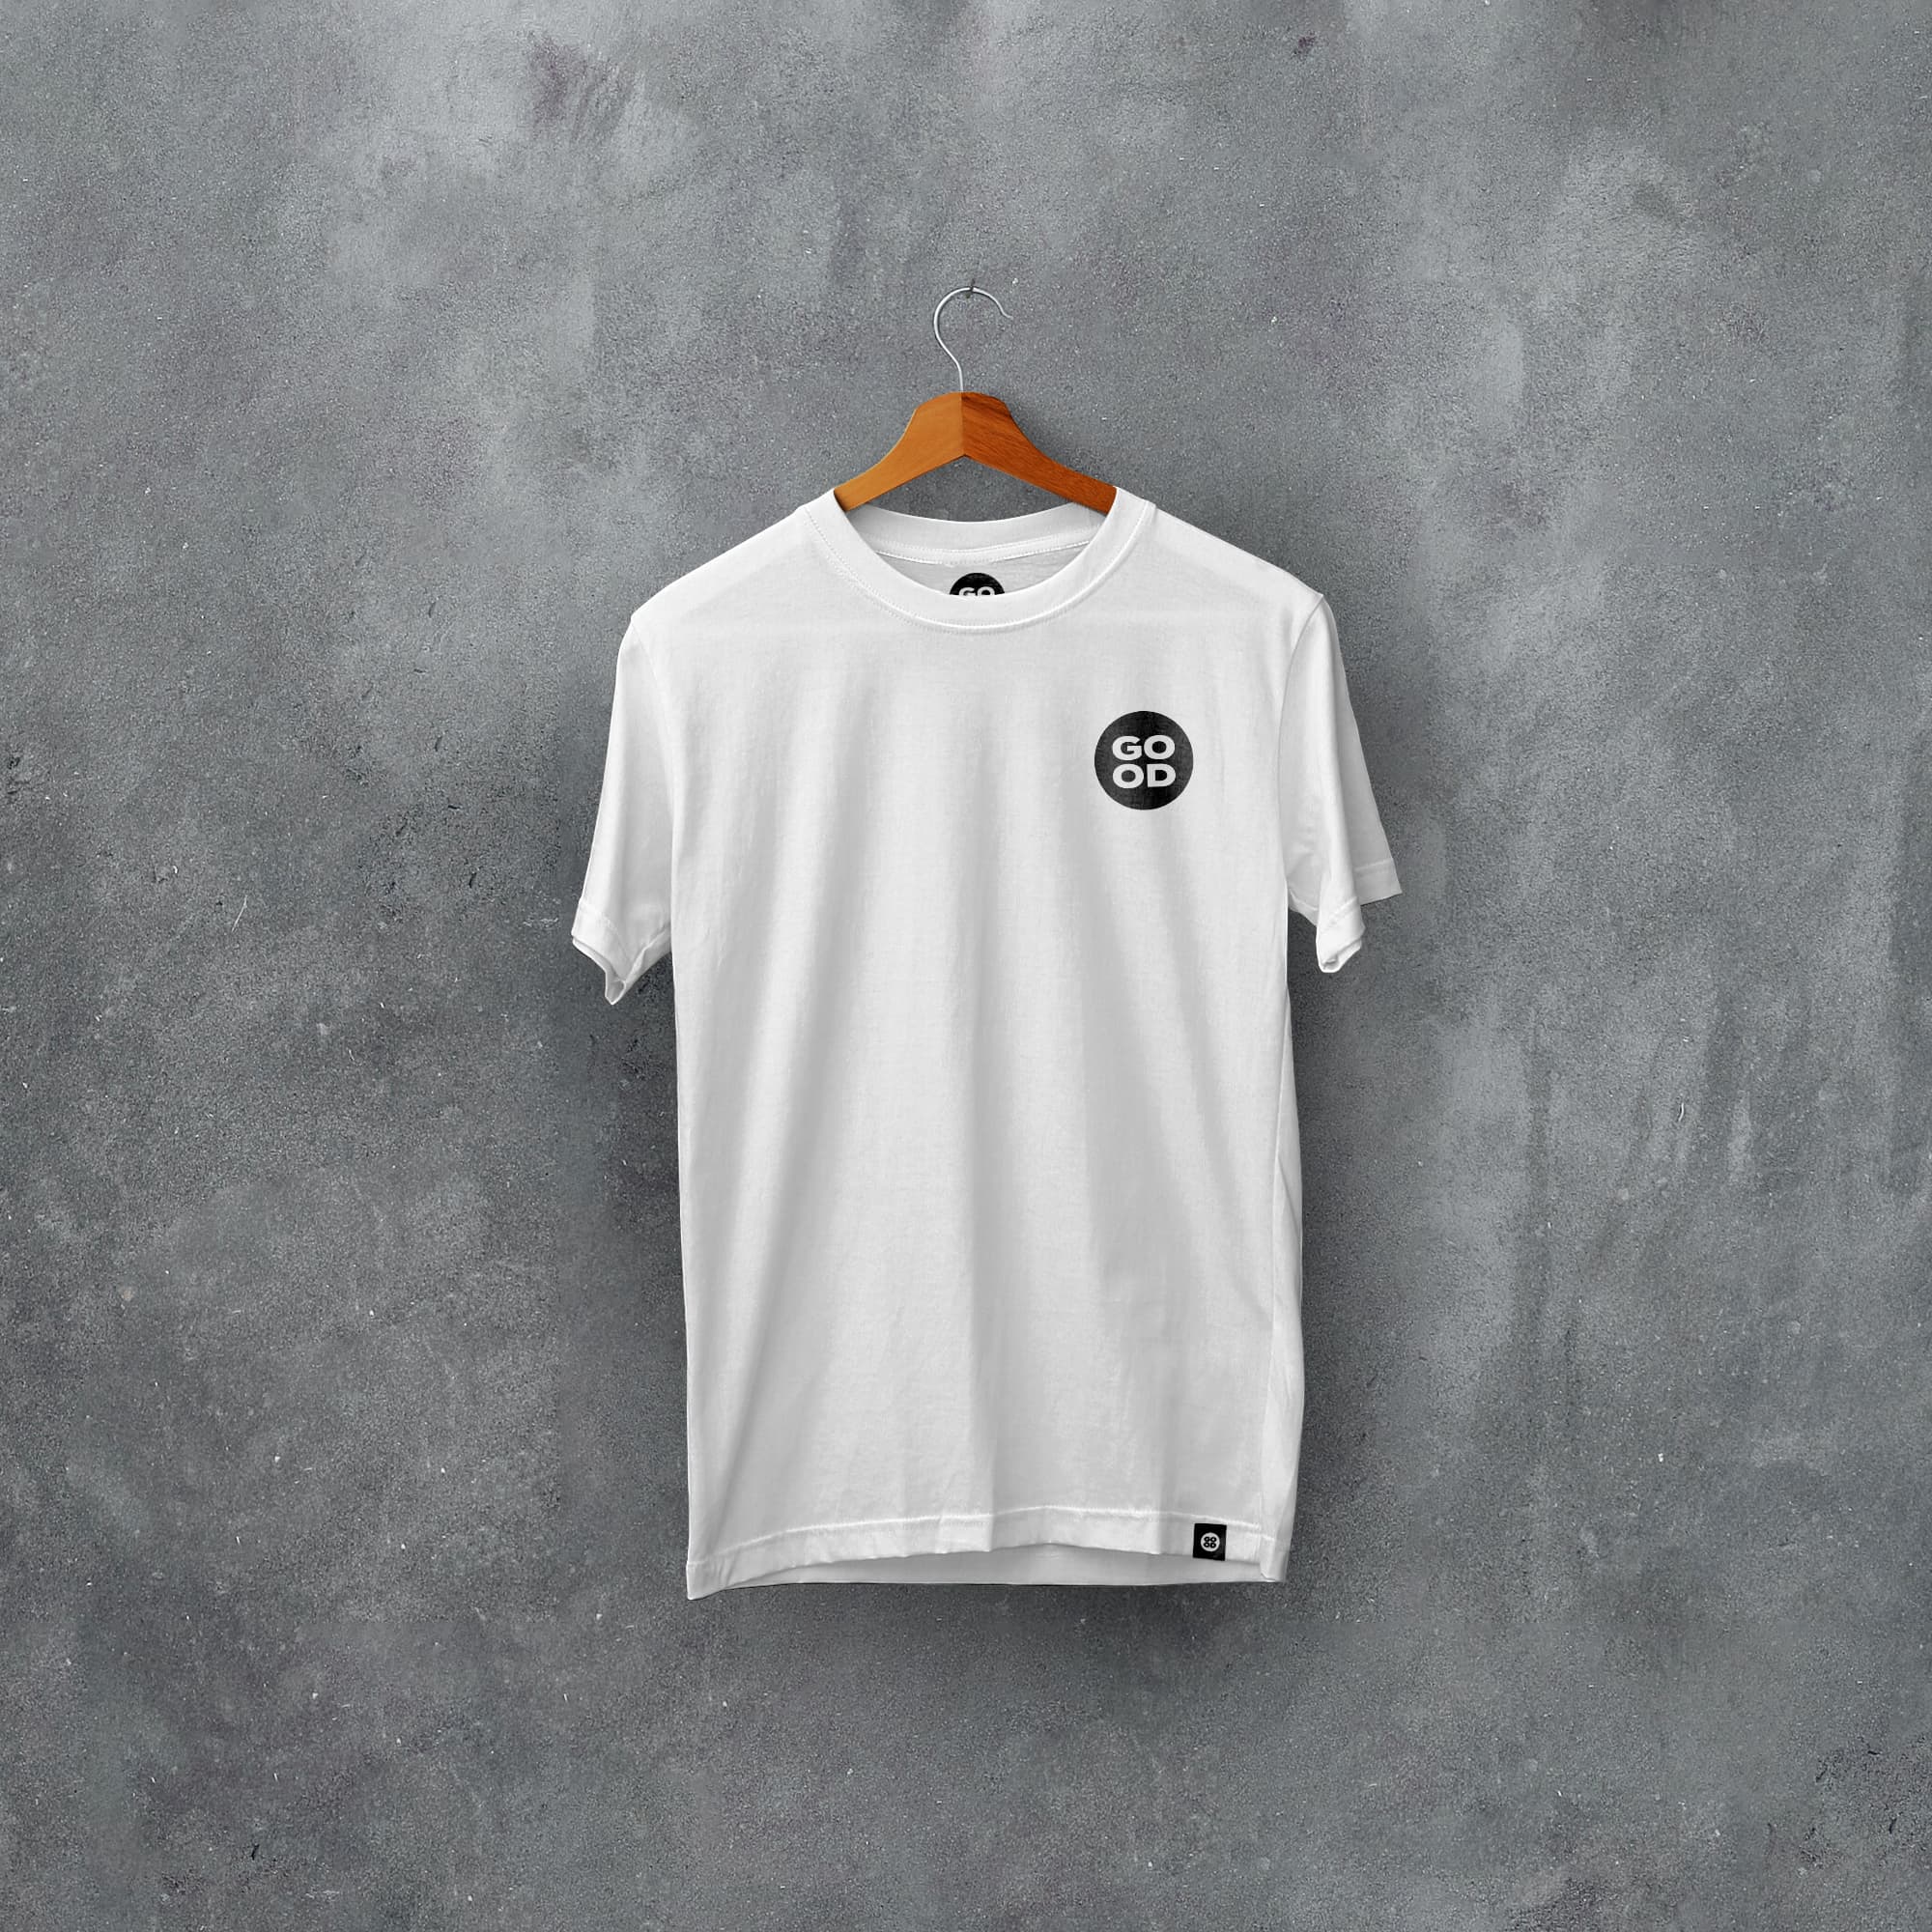 Cardiff Classic Kits Football T-Shirt